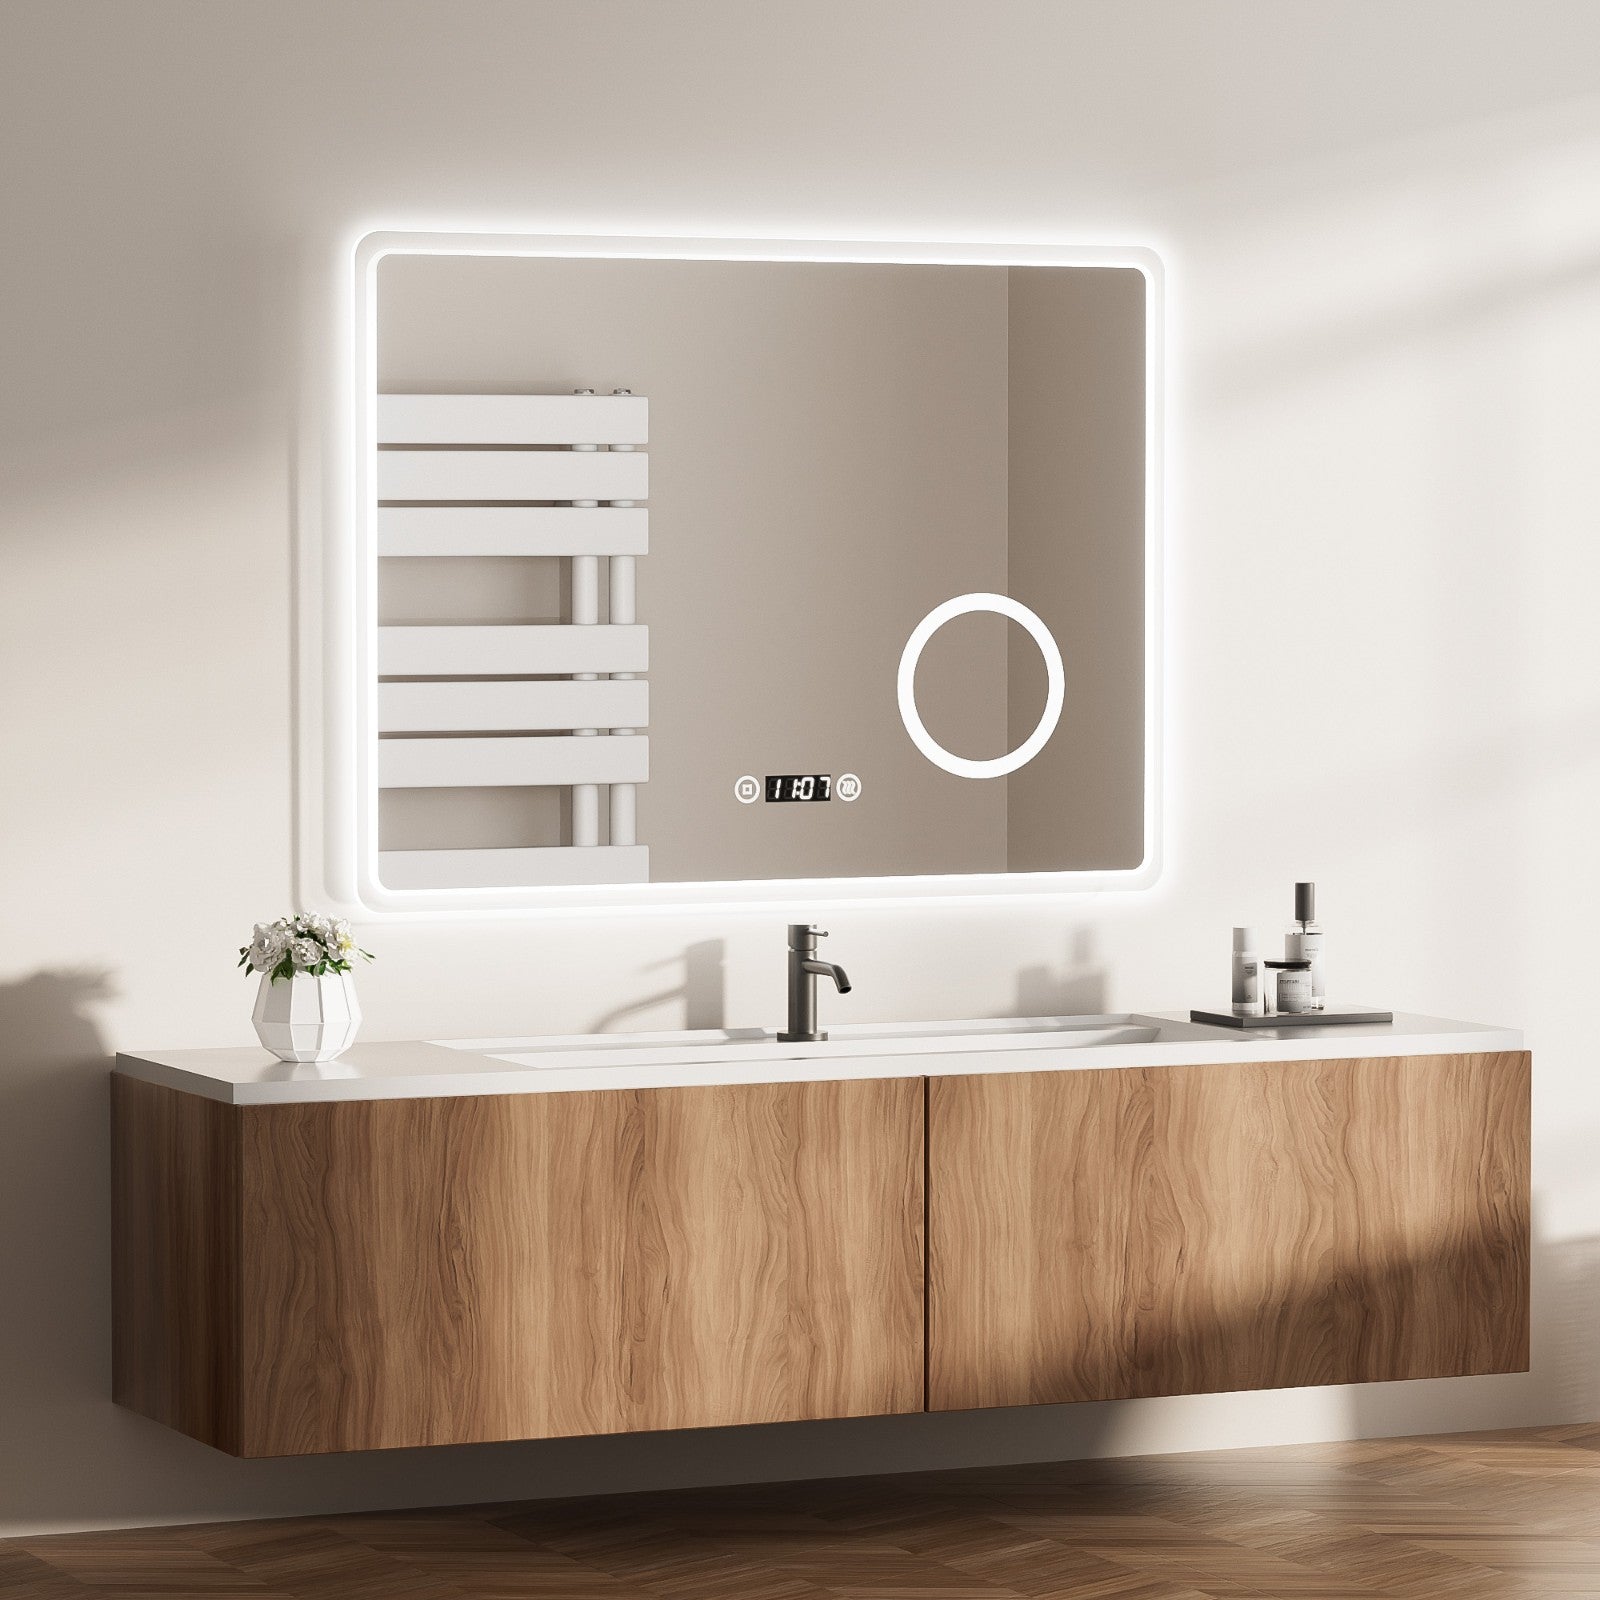 Entspannender Badspiegel mit Beleuchtung: 70 % der Haushalte entscheiden sich für klarere LED-Badspiegel anstelle gewöhnlicher Spiegel. Die komfortable Größe von 80 x 60 cm sorgt für genau die richtige Beleuchtung.. Praktischer Badezimmerspiegel: Der separate Antibeschlagschalter ermöglicht eine freiere Bedienung. Der praktische Spiegel mit Uhr lässt sich bequem über Antibeschlag-Knöpfe verstellen.. Schlaue 3-in-1-Touch: Mit dem SmartTouch 3.0 des EMKE Badezimmerspiegels können Schalter + 3 Lichtfarben + Dimmen mit einem 'Touch' erreicht werden